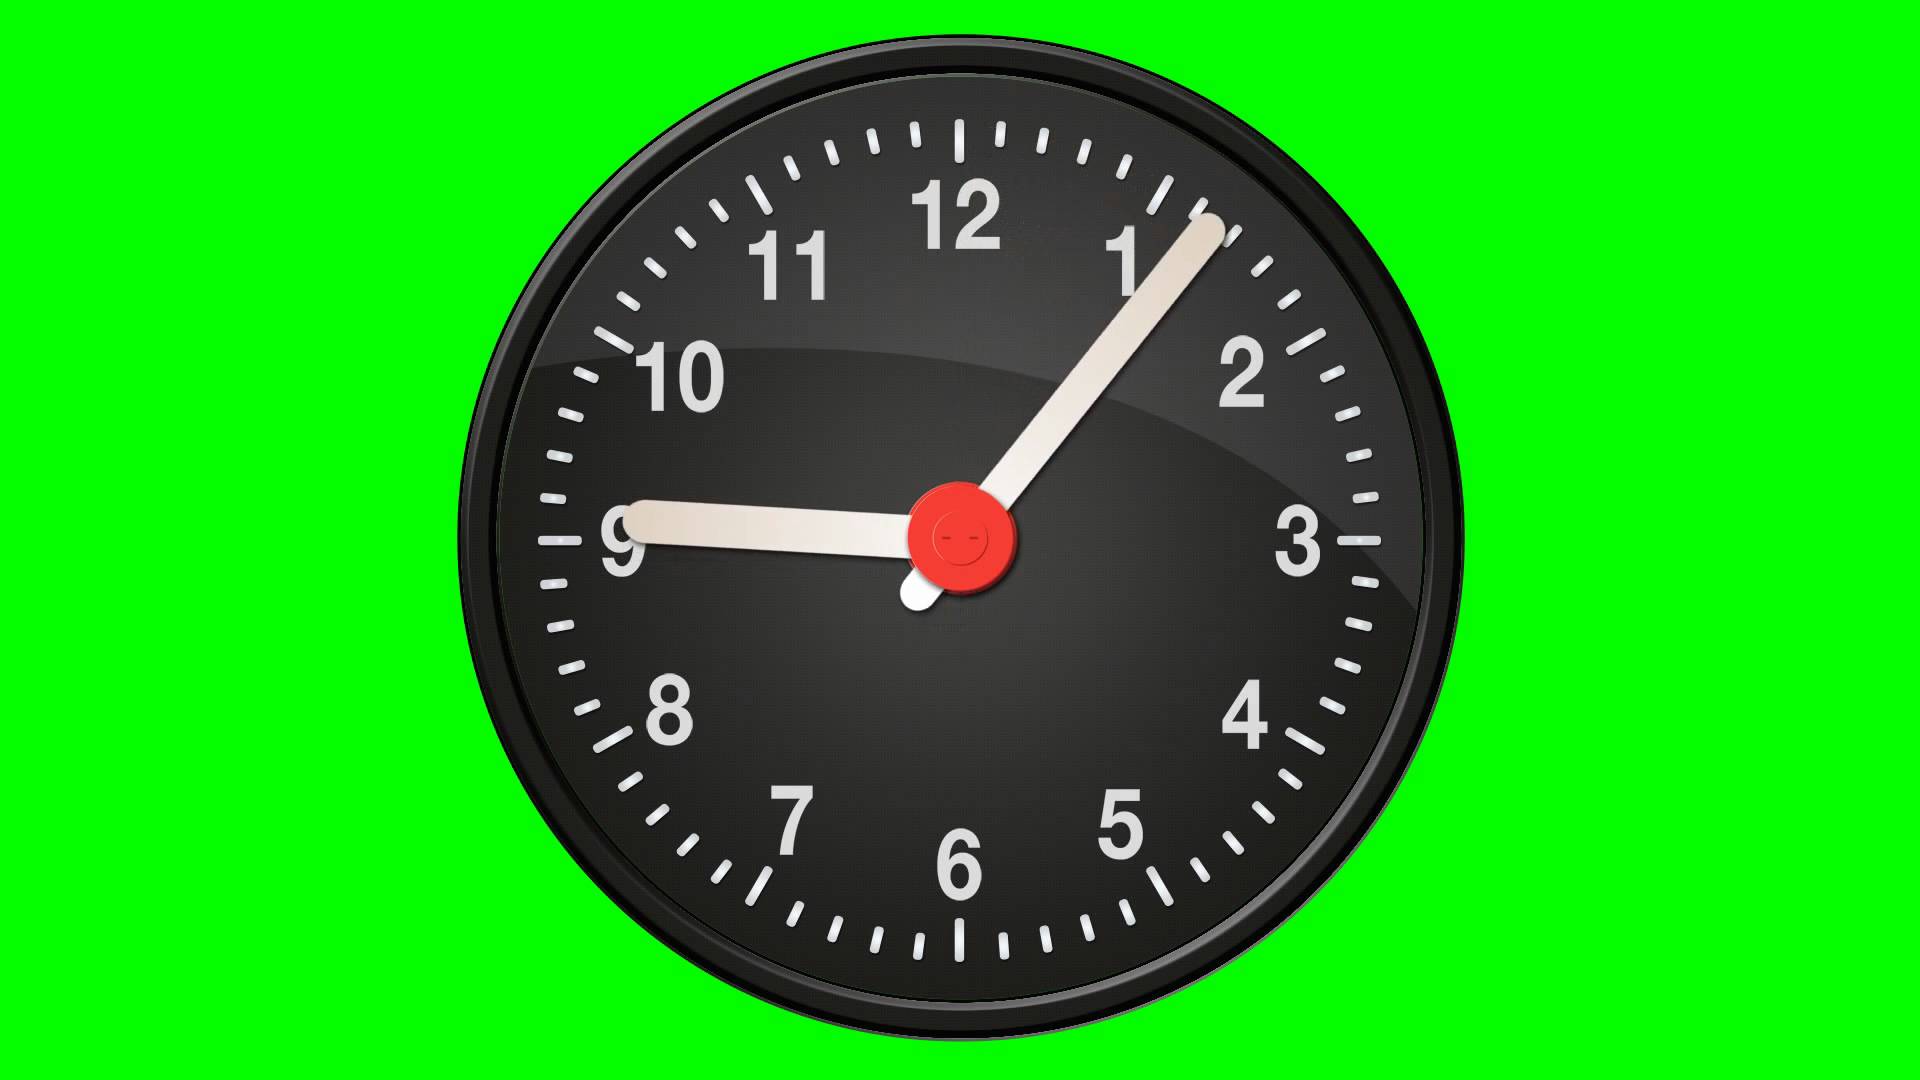 Видео на 12 часов. Часы хромакей. Часы на зеленом фоне. Часы футаж. Часы для монтажа.